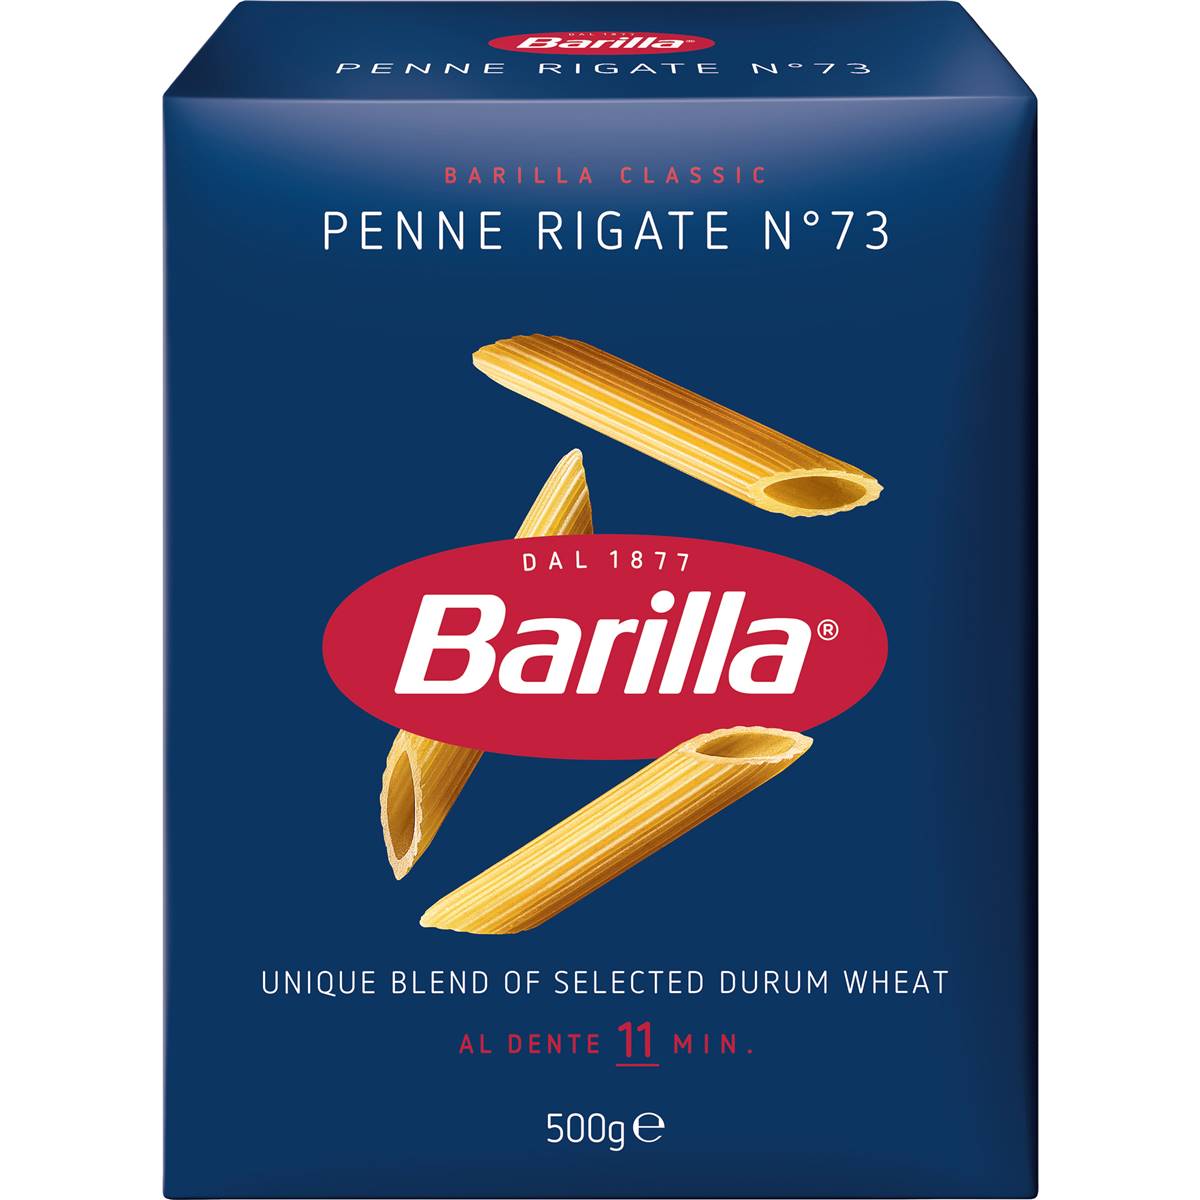 Barilla Pasta Penne Rigate No 73 500g